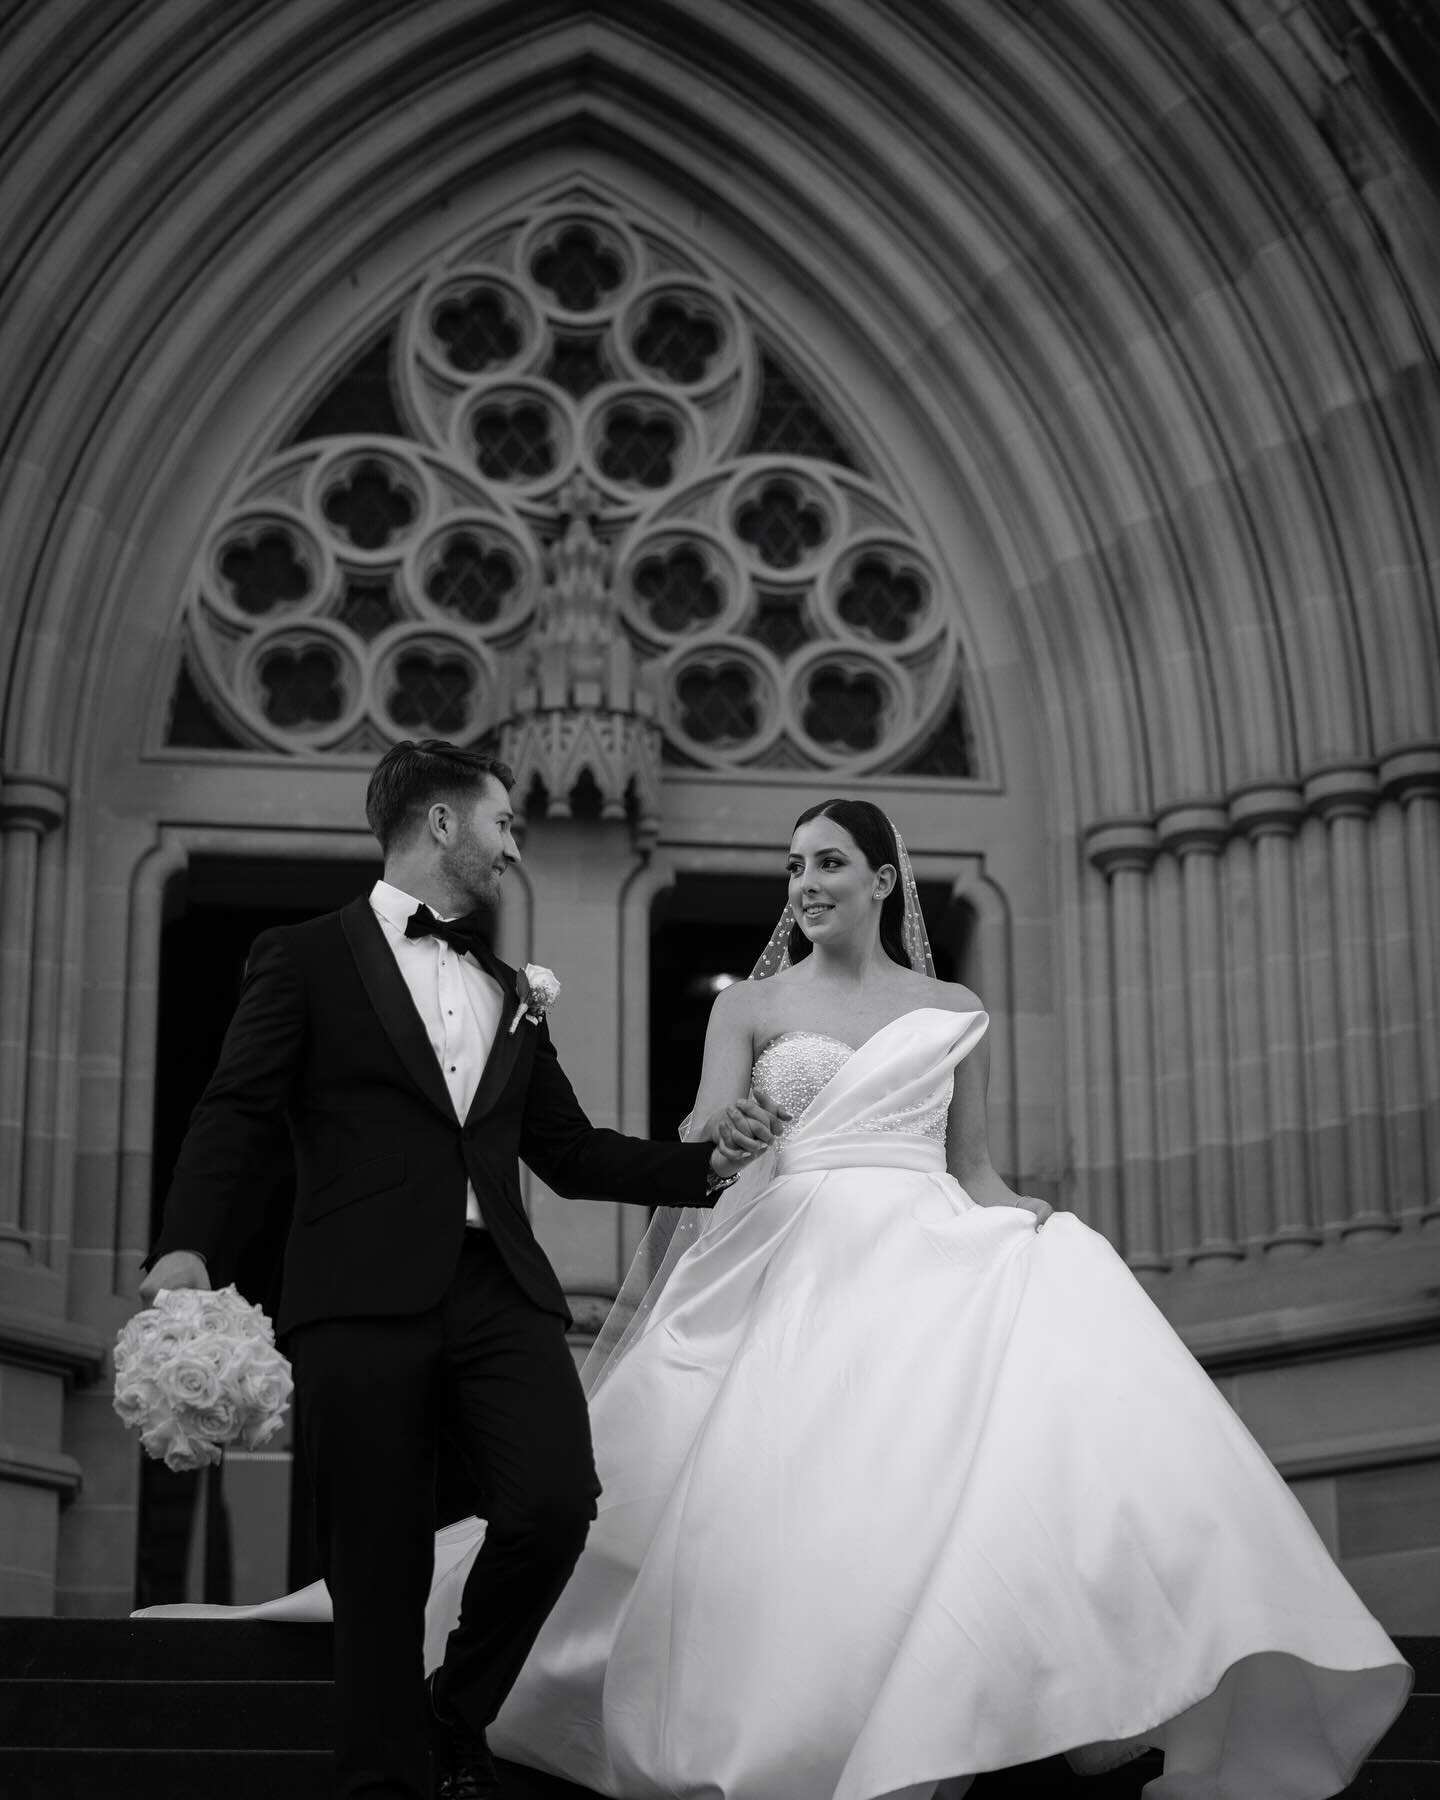 🤍🖤

Connor &amp; Nicole, captured for @georgejohnphotography at St Mary&rsquo;s Cathedral 

#wedding #weddingday #weddingdress #blackandwhitephoto #monochrome #weddingphotography #bride #brideandgroom #shesaidyes #weddinginspiration #weddingphotogr